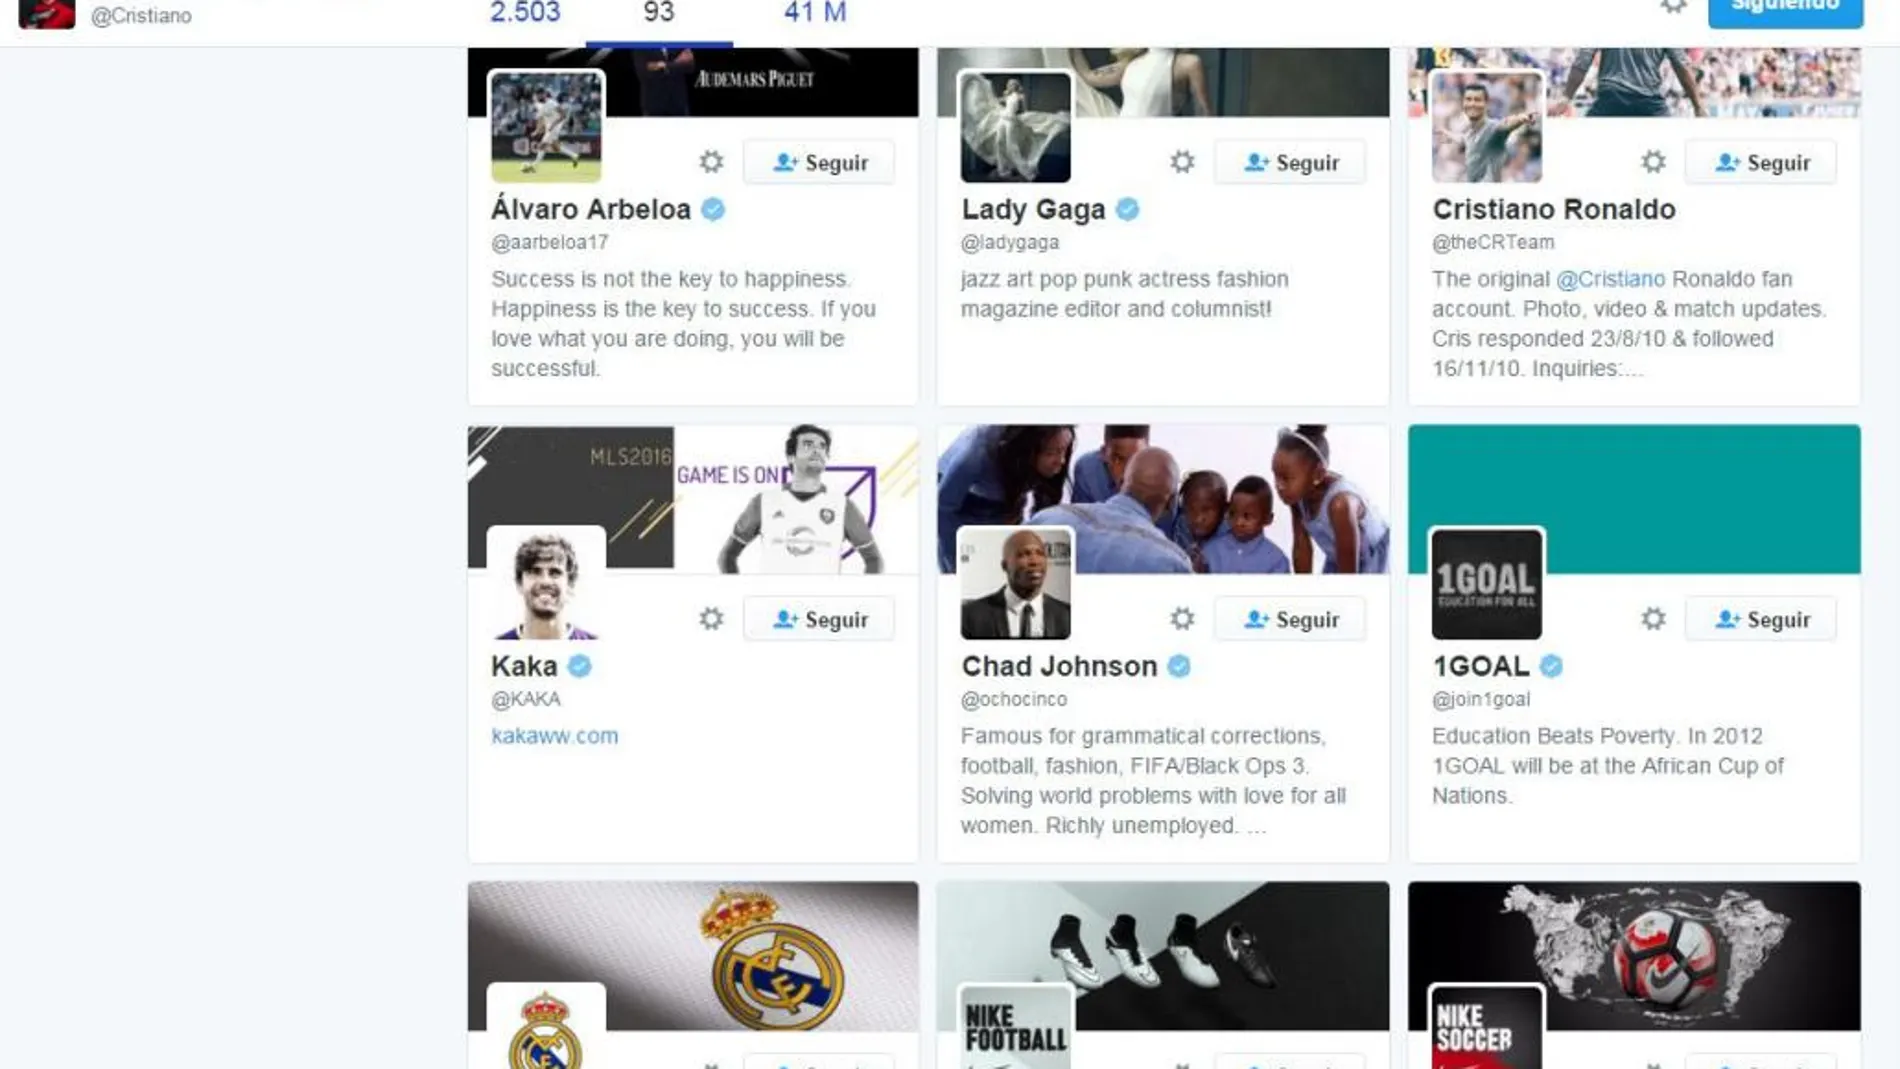 ¿Quiénes son los 93 «elegidos» que sigue en Twitter Ronaldo, con 41 millones de seguidores?